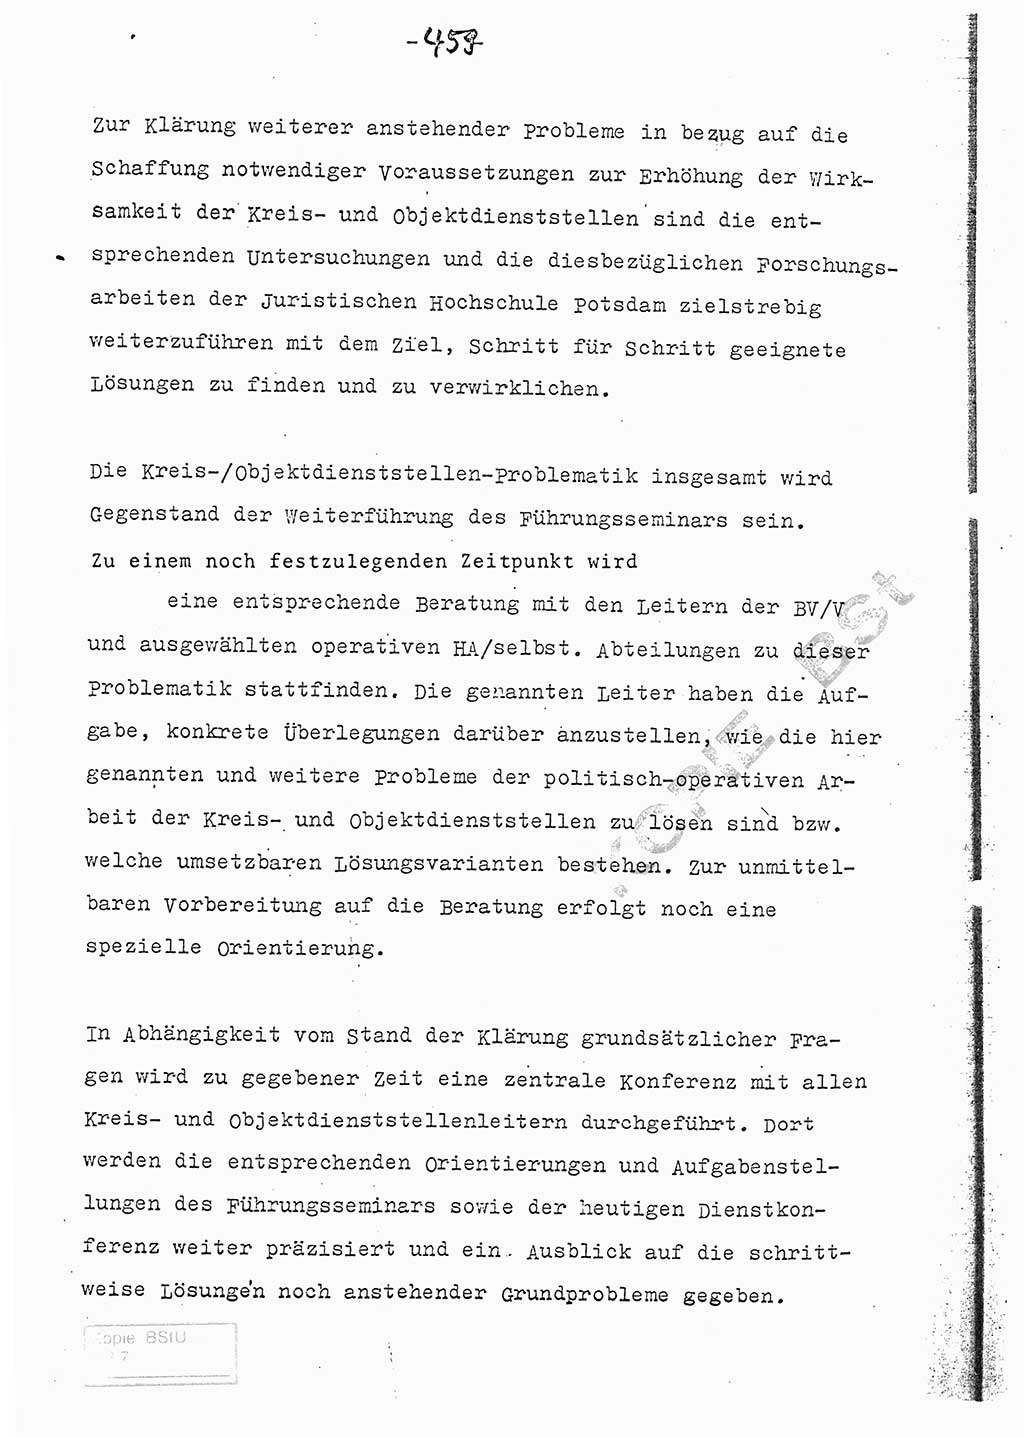 Referat (Entwurf) des Genossen Minister (Generaloberst Erich Mielke) auf der Dienstkonferenz 1972, Ministerium für Staatssicherheit (MfS) [Deutsche Demokratische Republik (DDR)], Der Minister, Geheime Verschlußsache (GVS) 008-150/72, Berlin 25.2.1972, Seite 459 (Ref. Entw. DK MfS DDR Min. GVS 008-150/72 1972, S. 459)